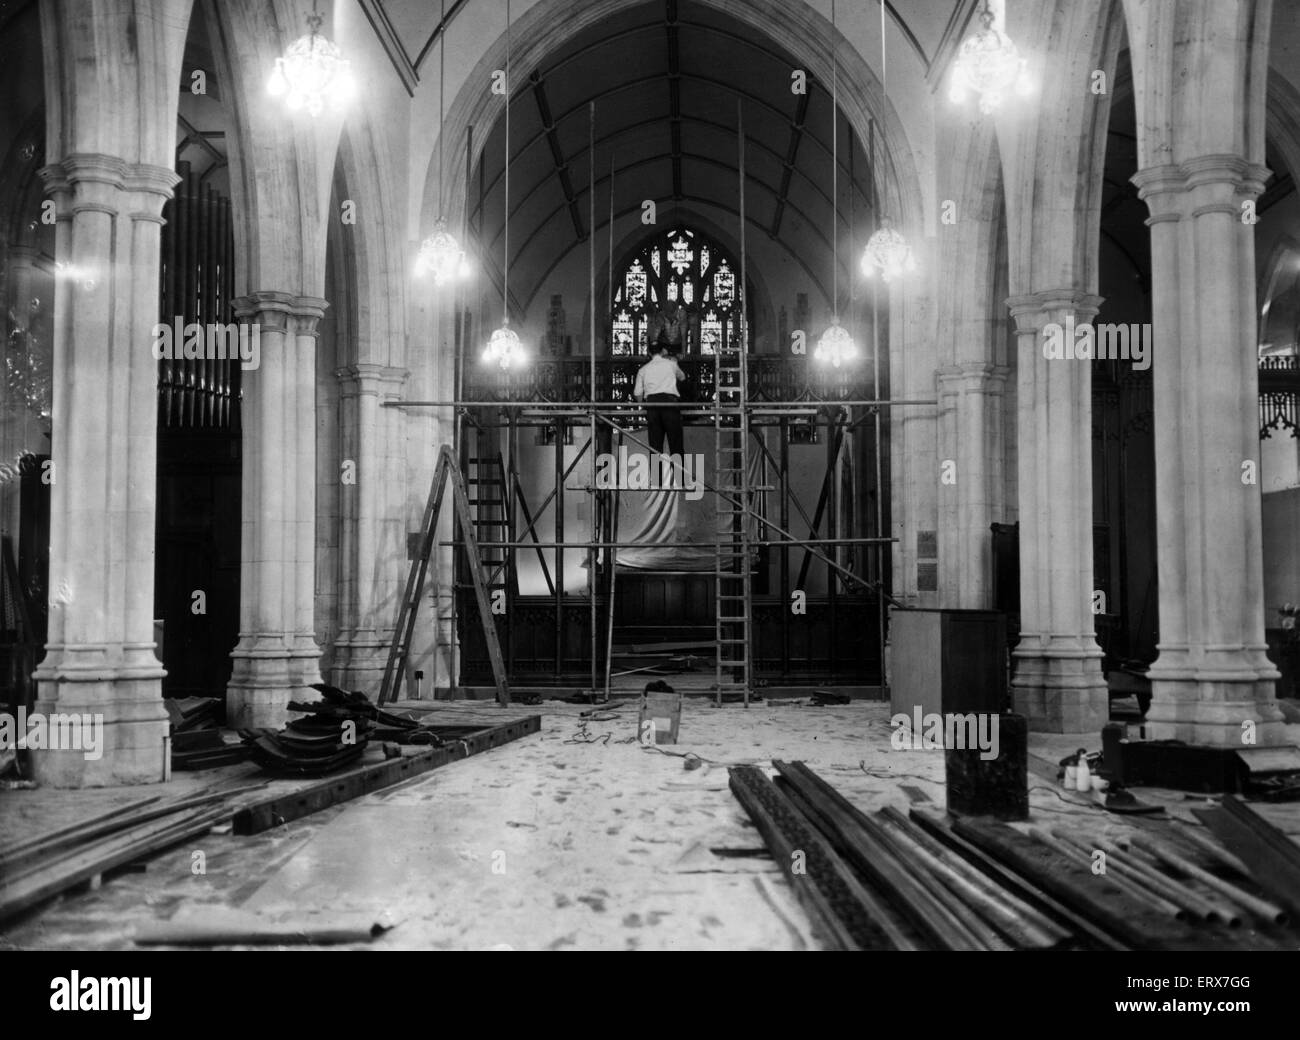 Intérieur de l'Église nouvellement reconstruite de St Jean l'Evangéliste, Maindee, Newport, Monmouthshire. Le Pays de Galles. Septembre 1952. L'église Saint Jean Maindee fut presque brûlé lors d'un incendie criminel le 11 novembre 1949 et a été pratiquement reconstruite et prête à l'étr Banque D'Images